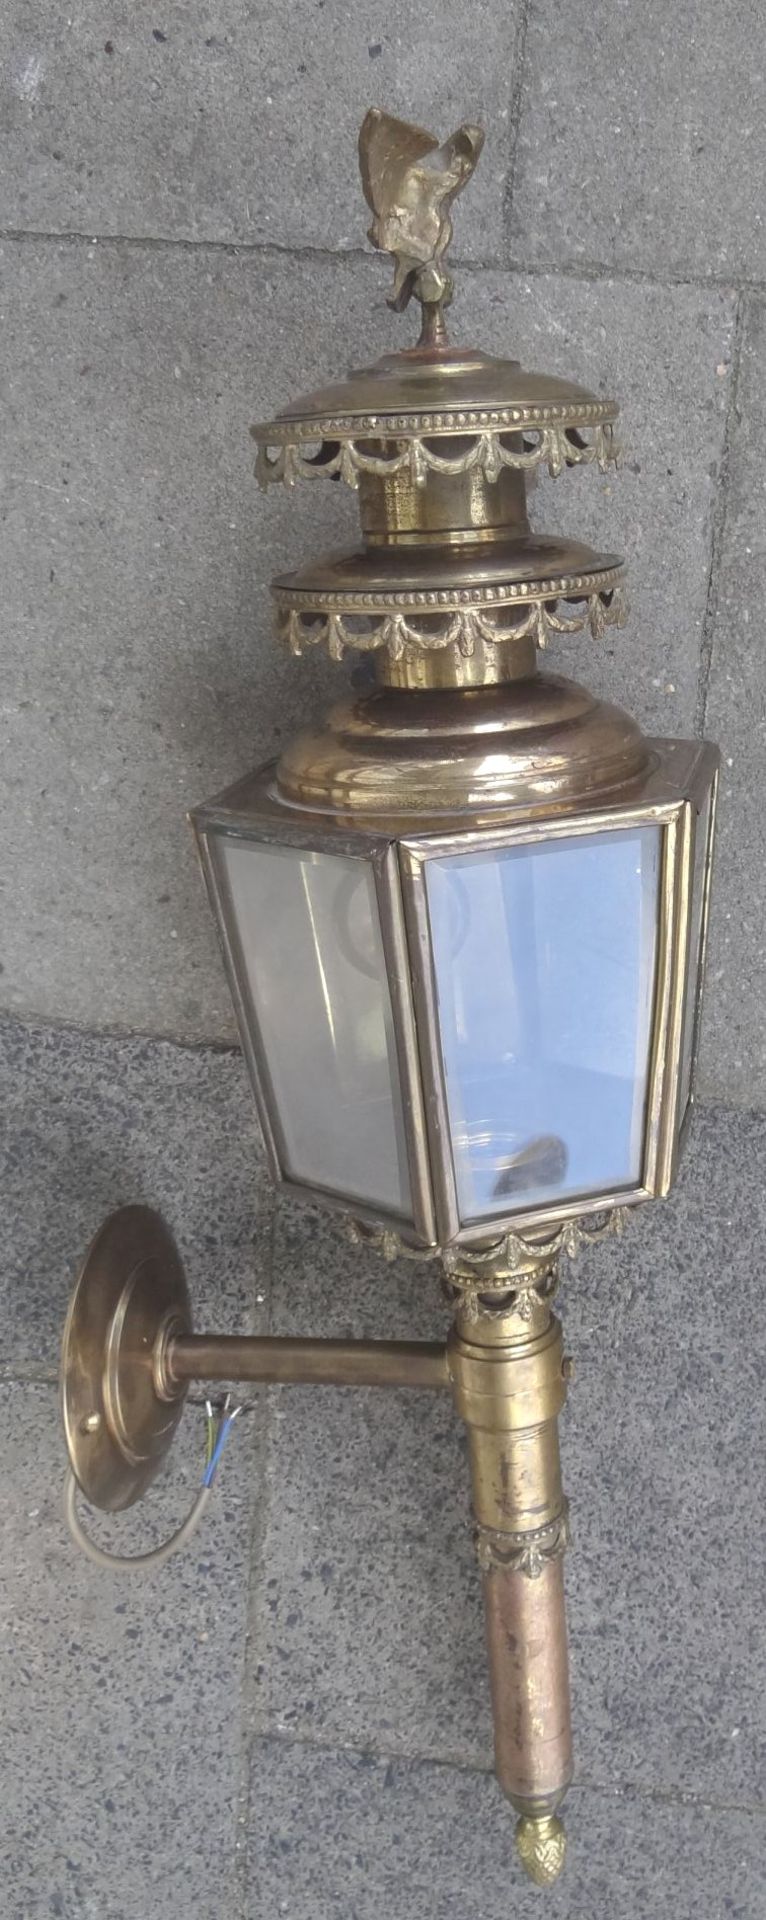 grosse, massive Kutschenlampe, Messing/Bronze, H-75 cm, B-28 cm, elektrisch, guter Zustand